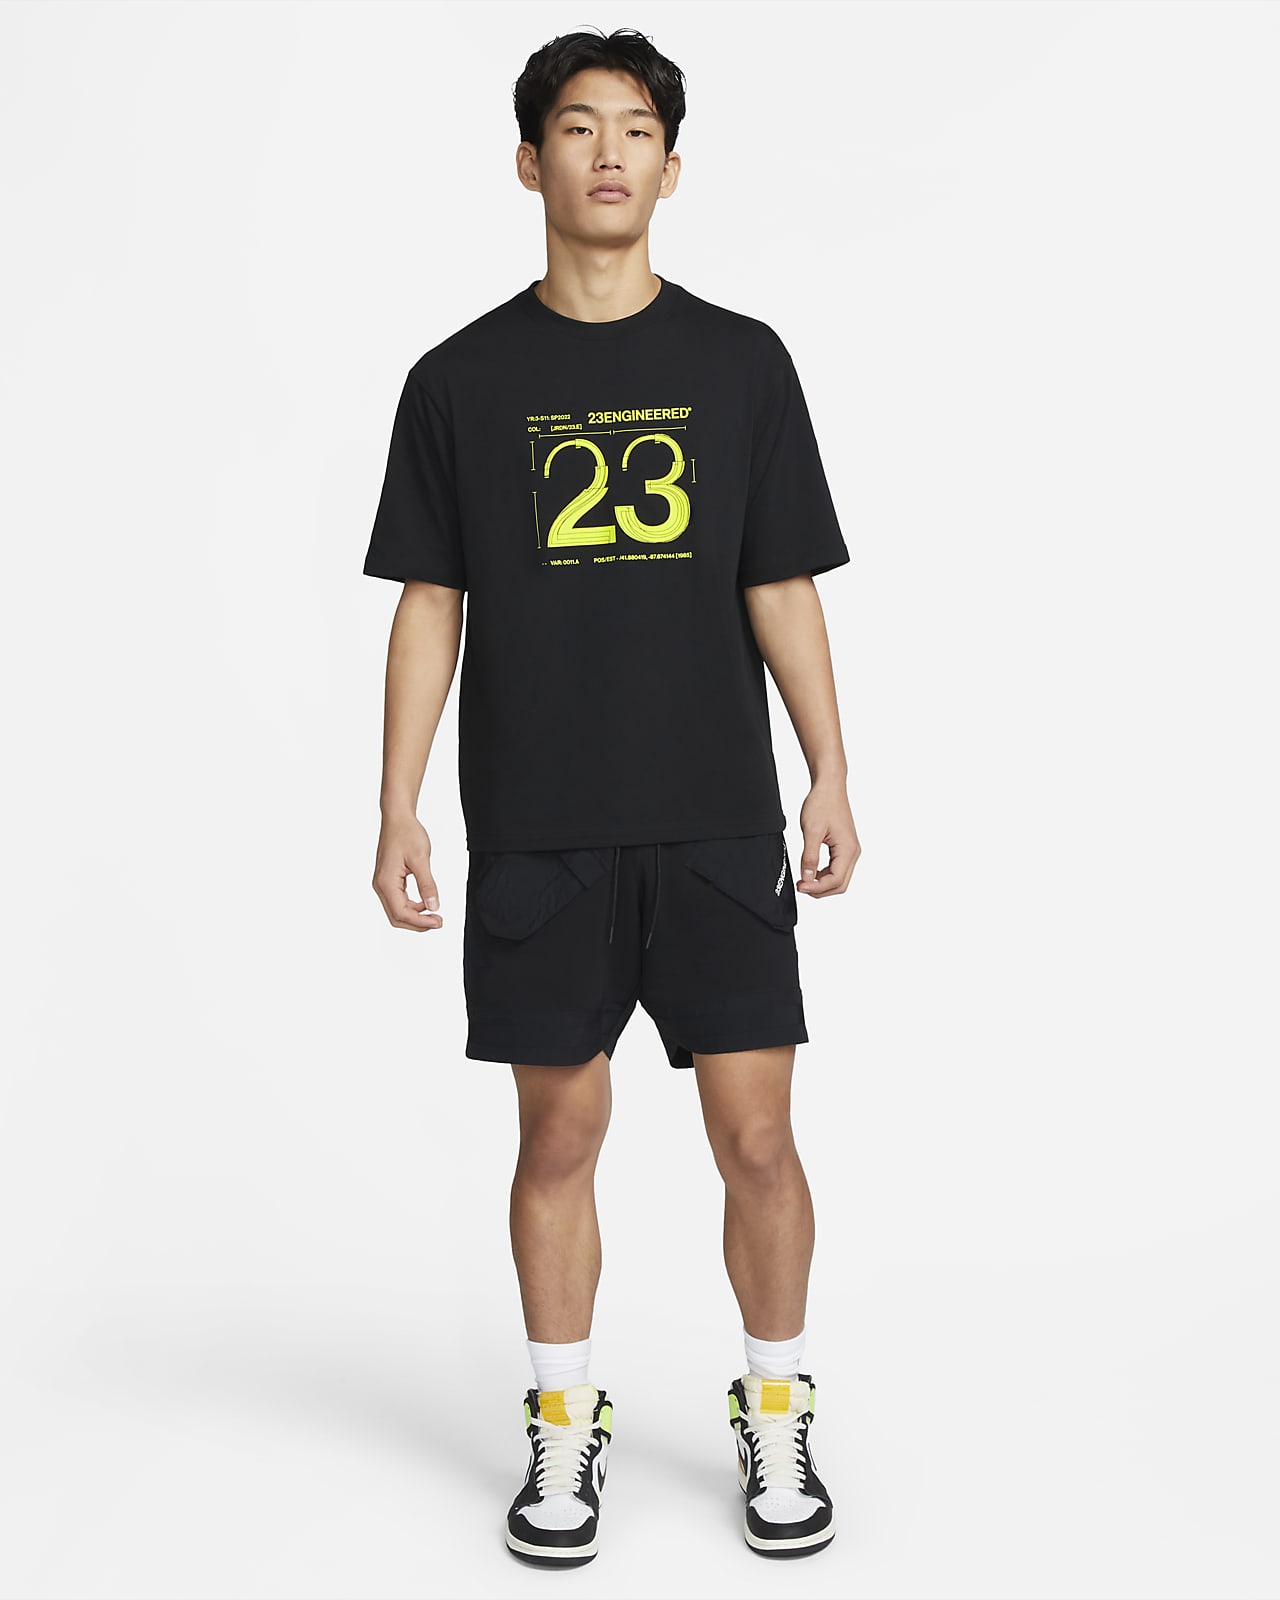 NIKE公式】ジョーダン 23 エンジニアード メンズ Tシャツ.オンライン 